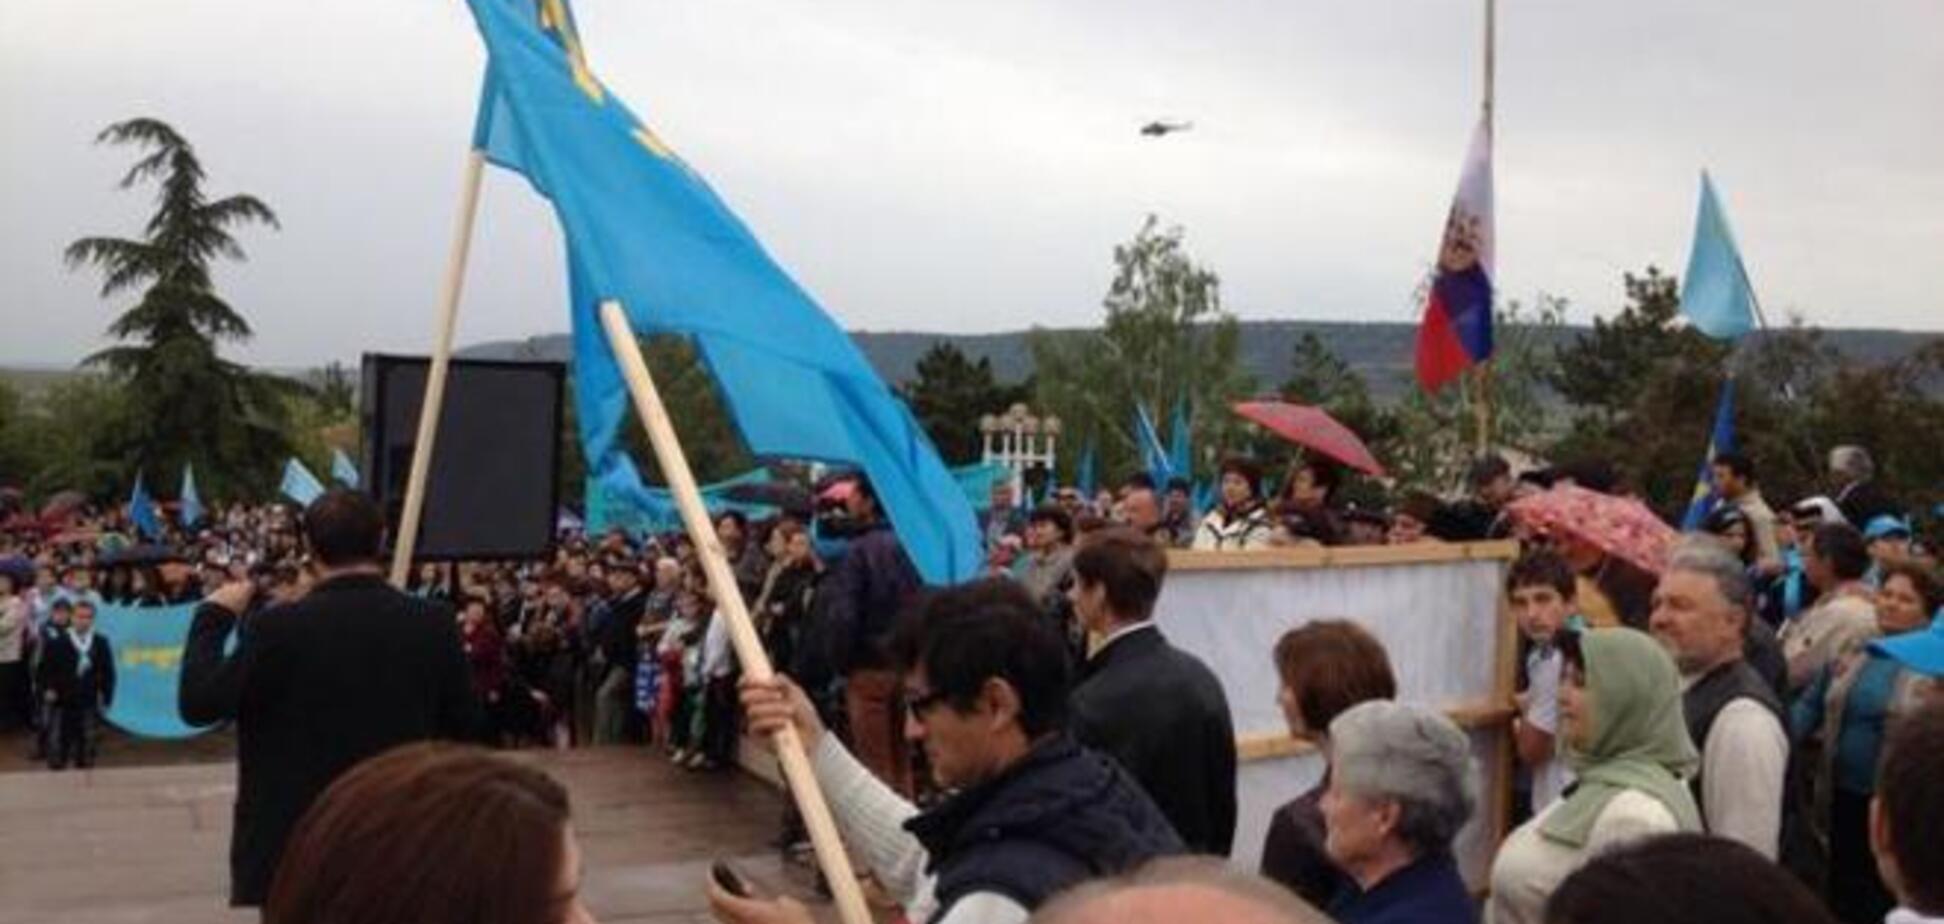 Несмотря на запреты, в Симферополе на митинг собралось около 20 тыс. крымских татар